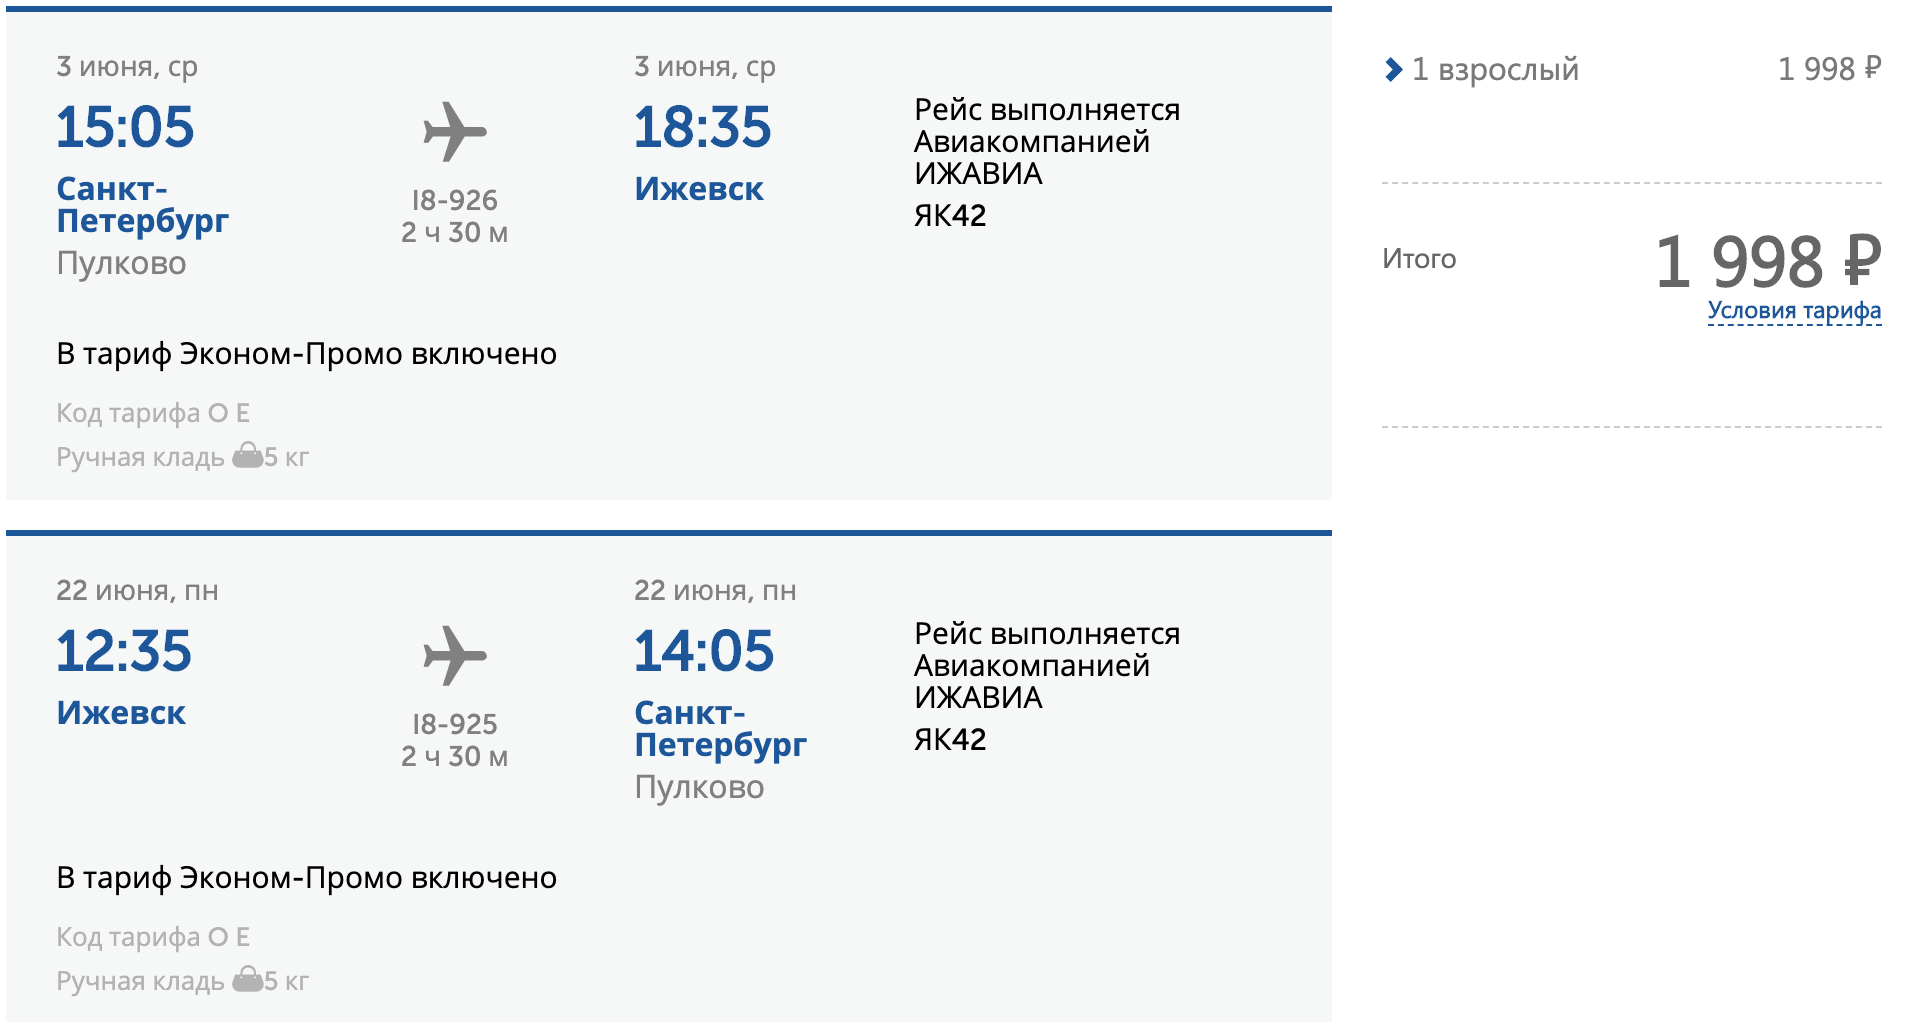 Купить билет туту ру сочи. Москва-Сочи авиабилеты. Авиабилеты самолет. Ижевск Сочи авиабилеты. Ижевск-Сочи авиабилеты прямой.